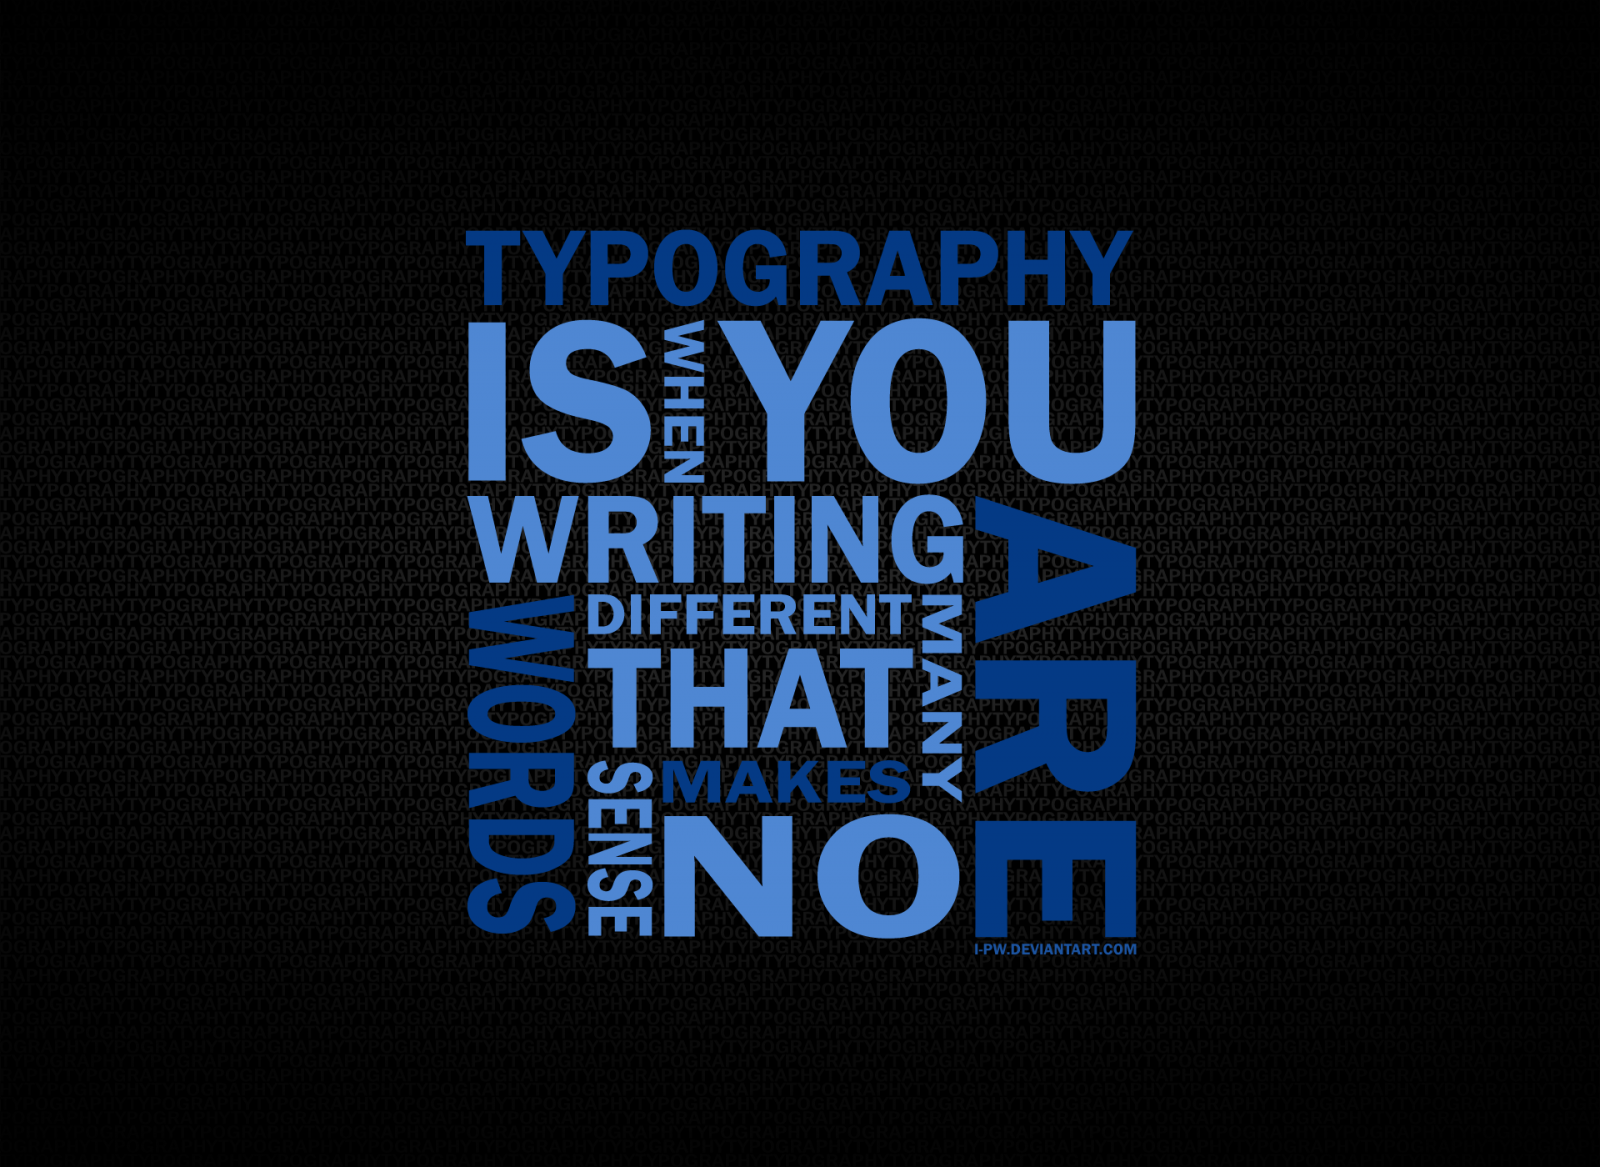 5 tác dụng của typography trong một thiết kế web hiện đại